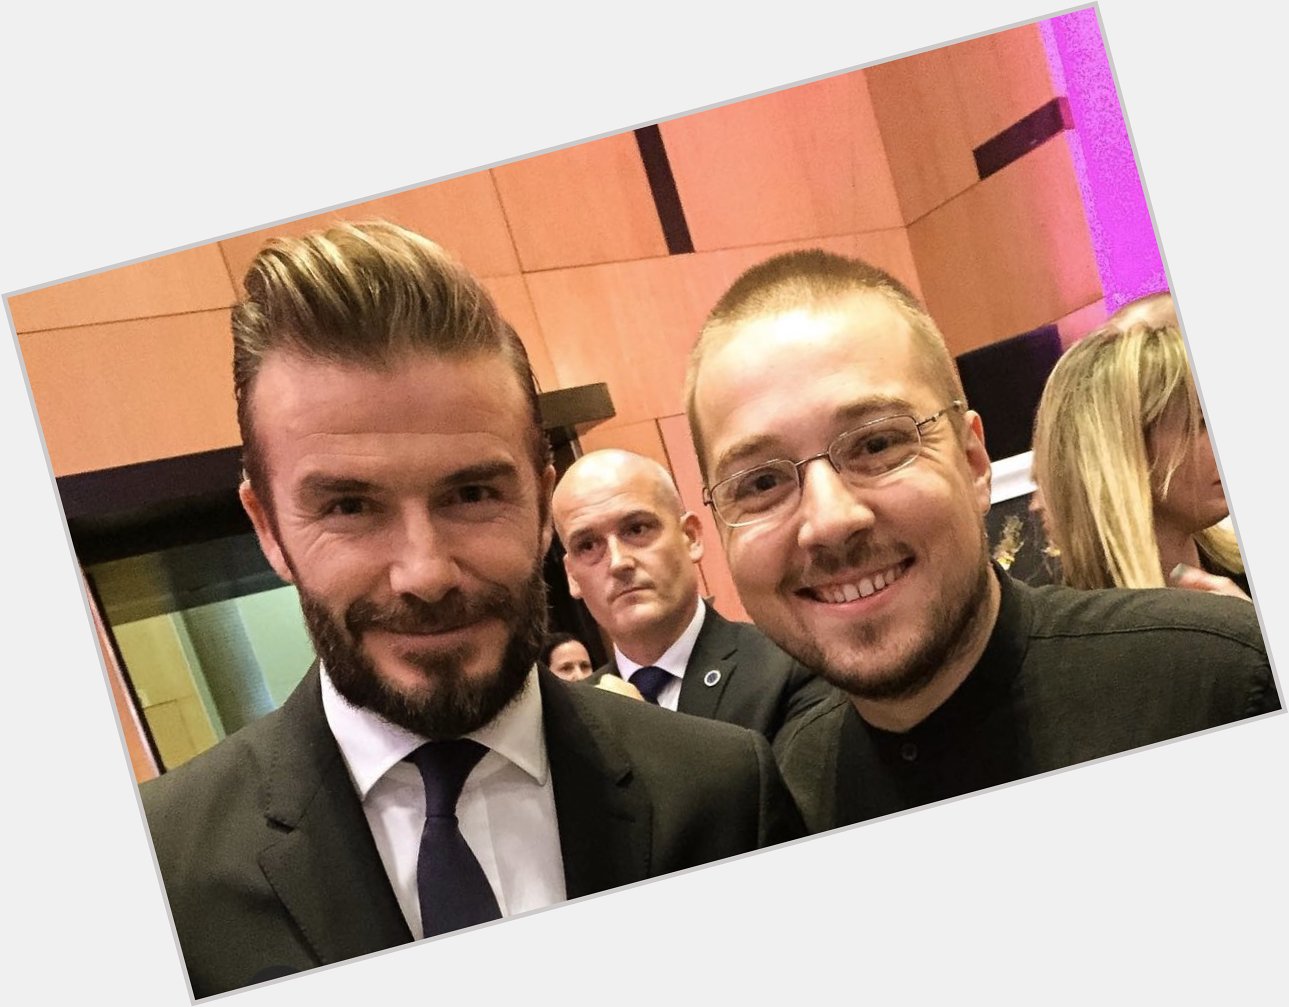 Obligatory Happy Birthday post for David Beckham. 